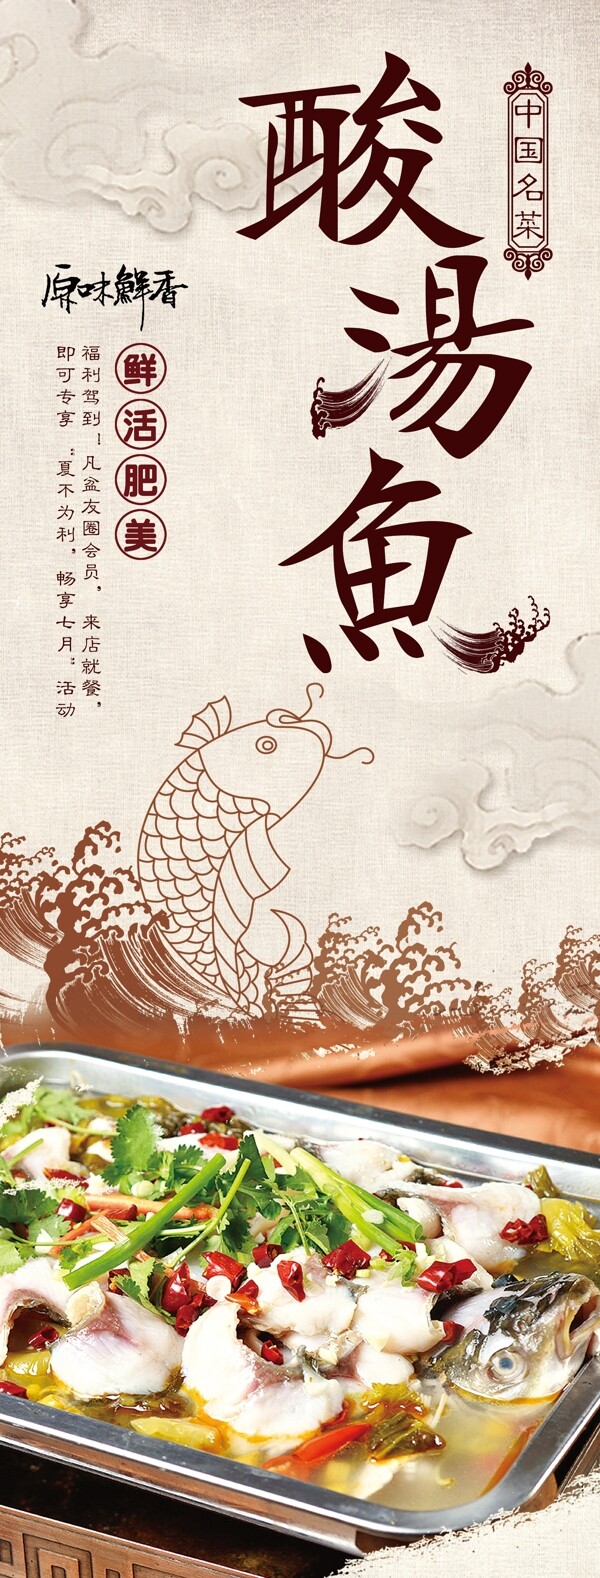 酸汤鱼美食活动宣传海报素材